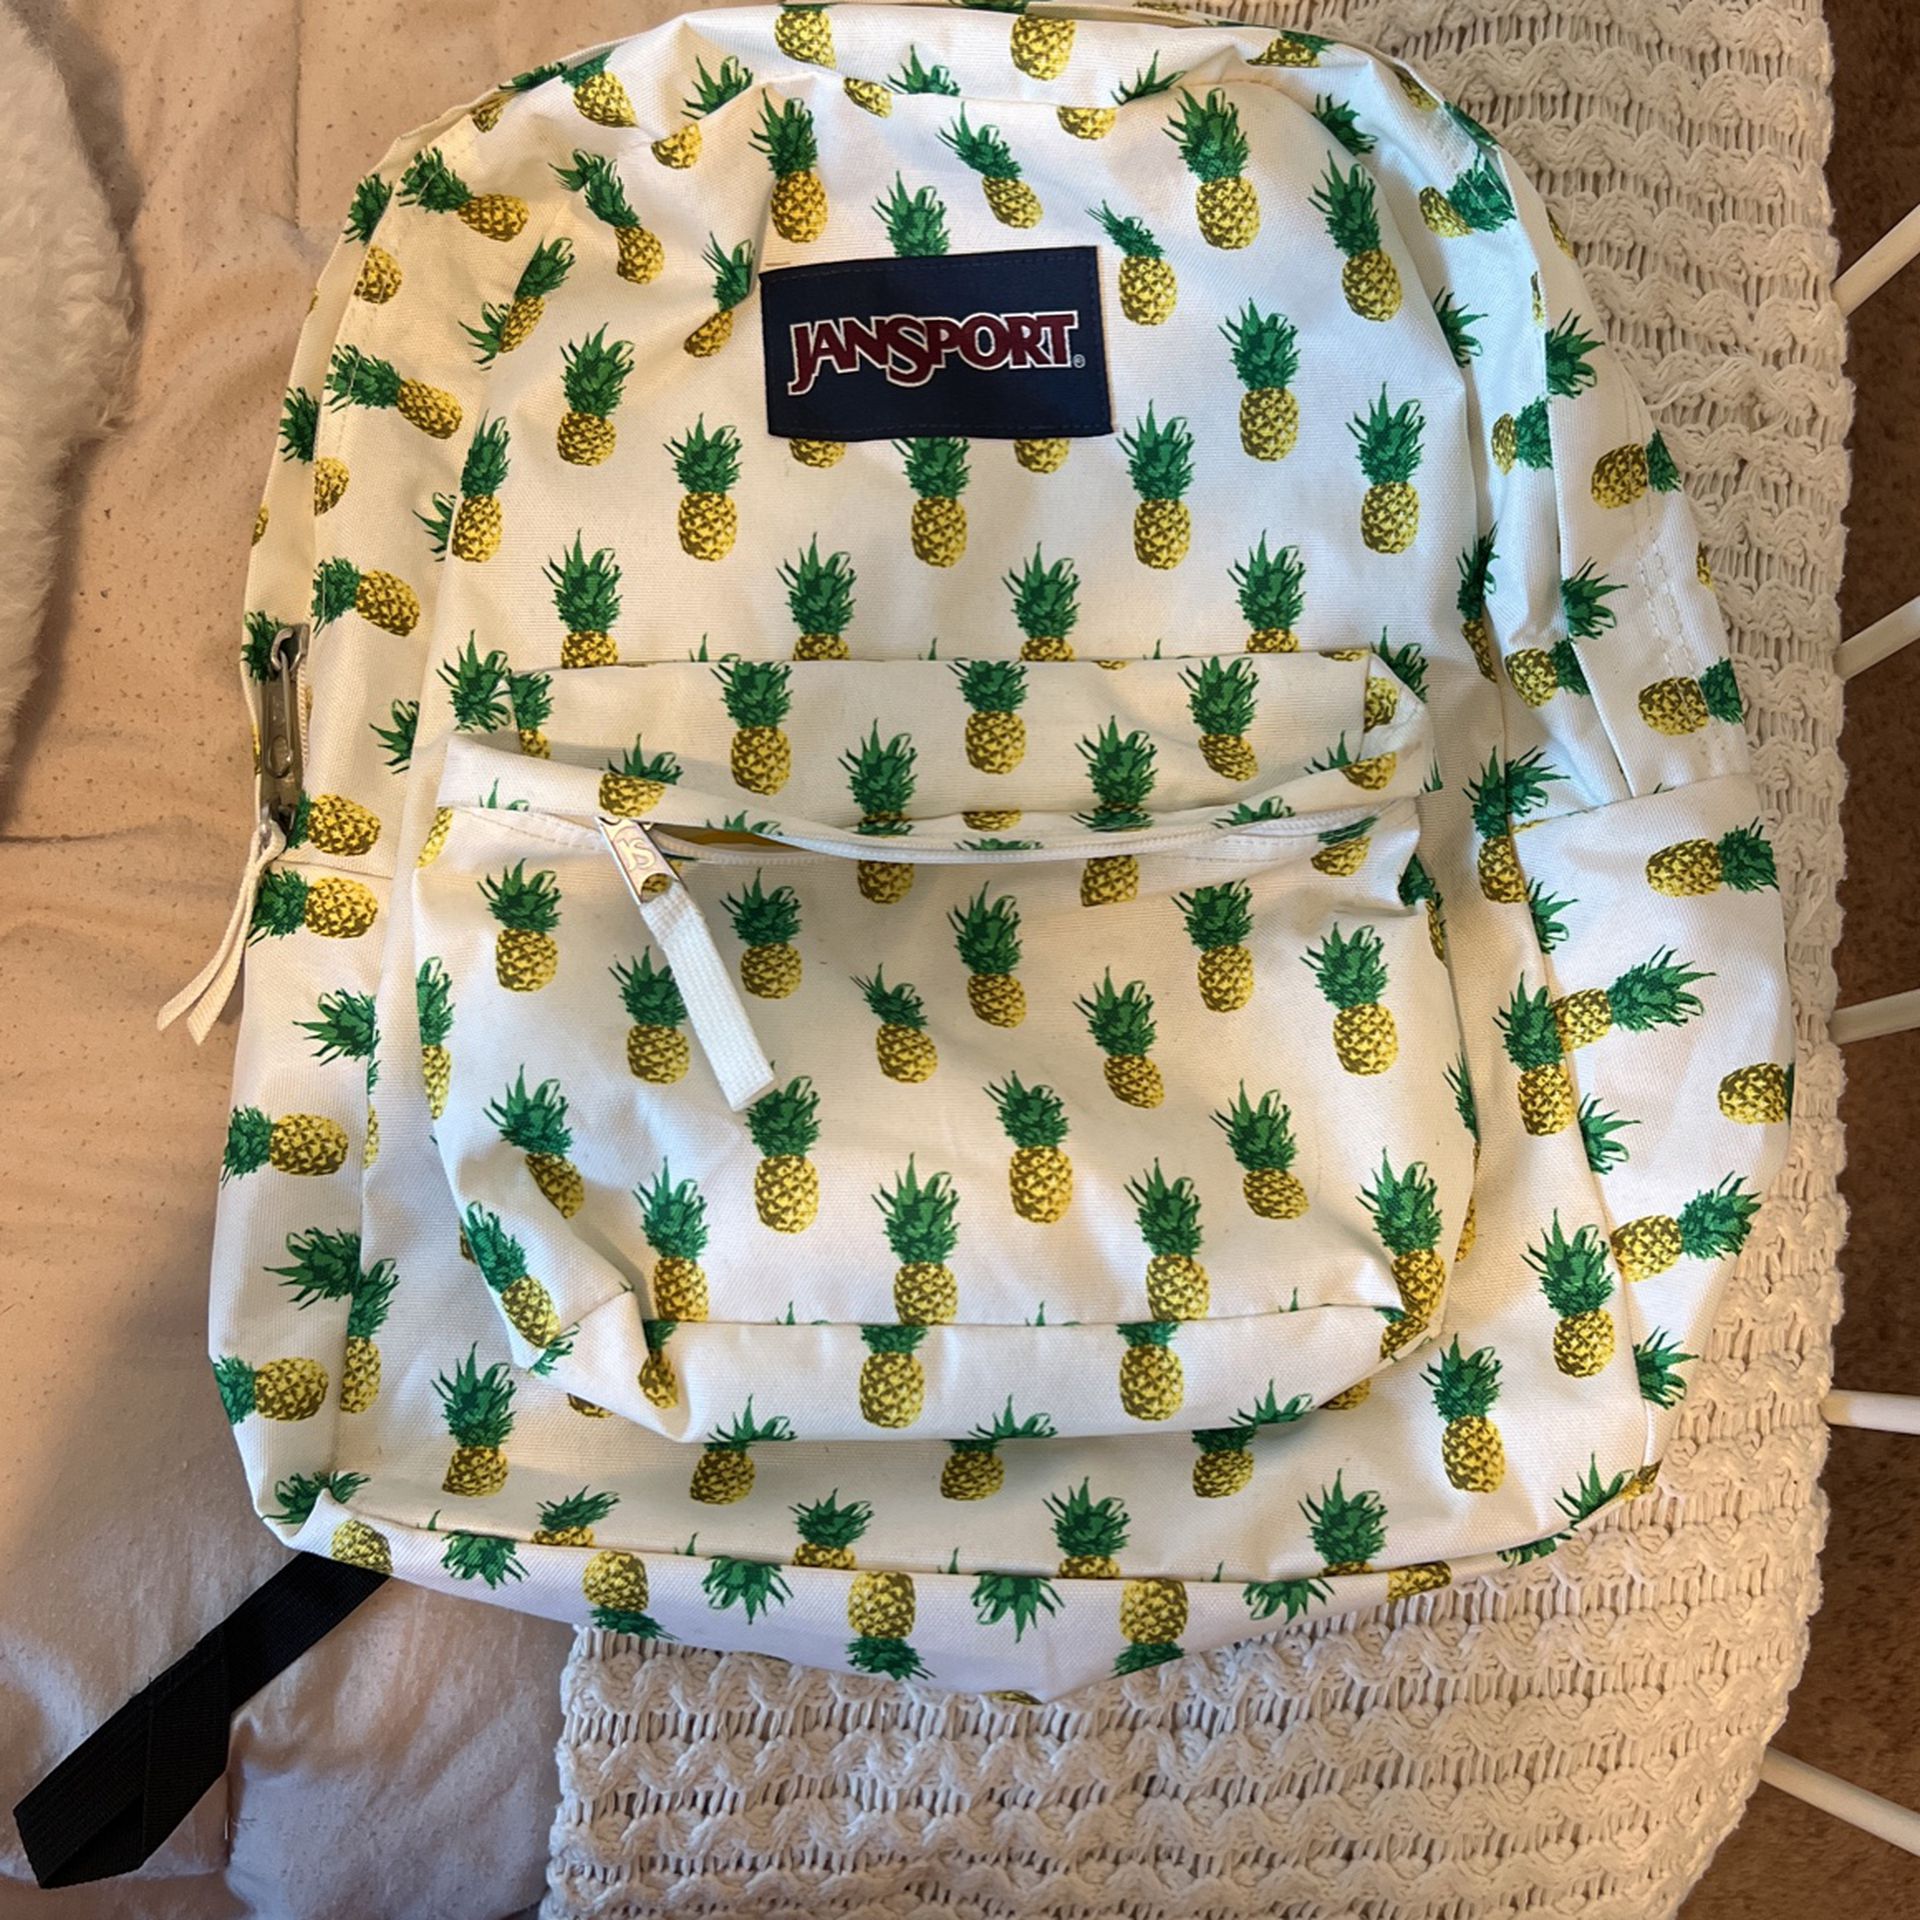 Brand new Jansport Pineapple backpack